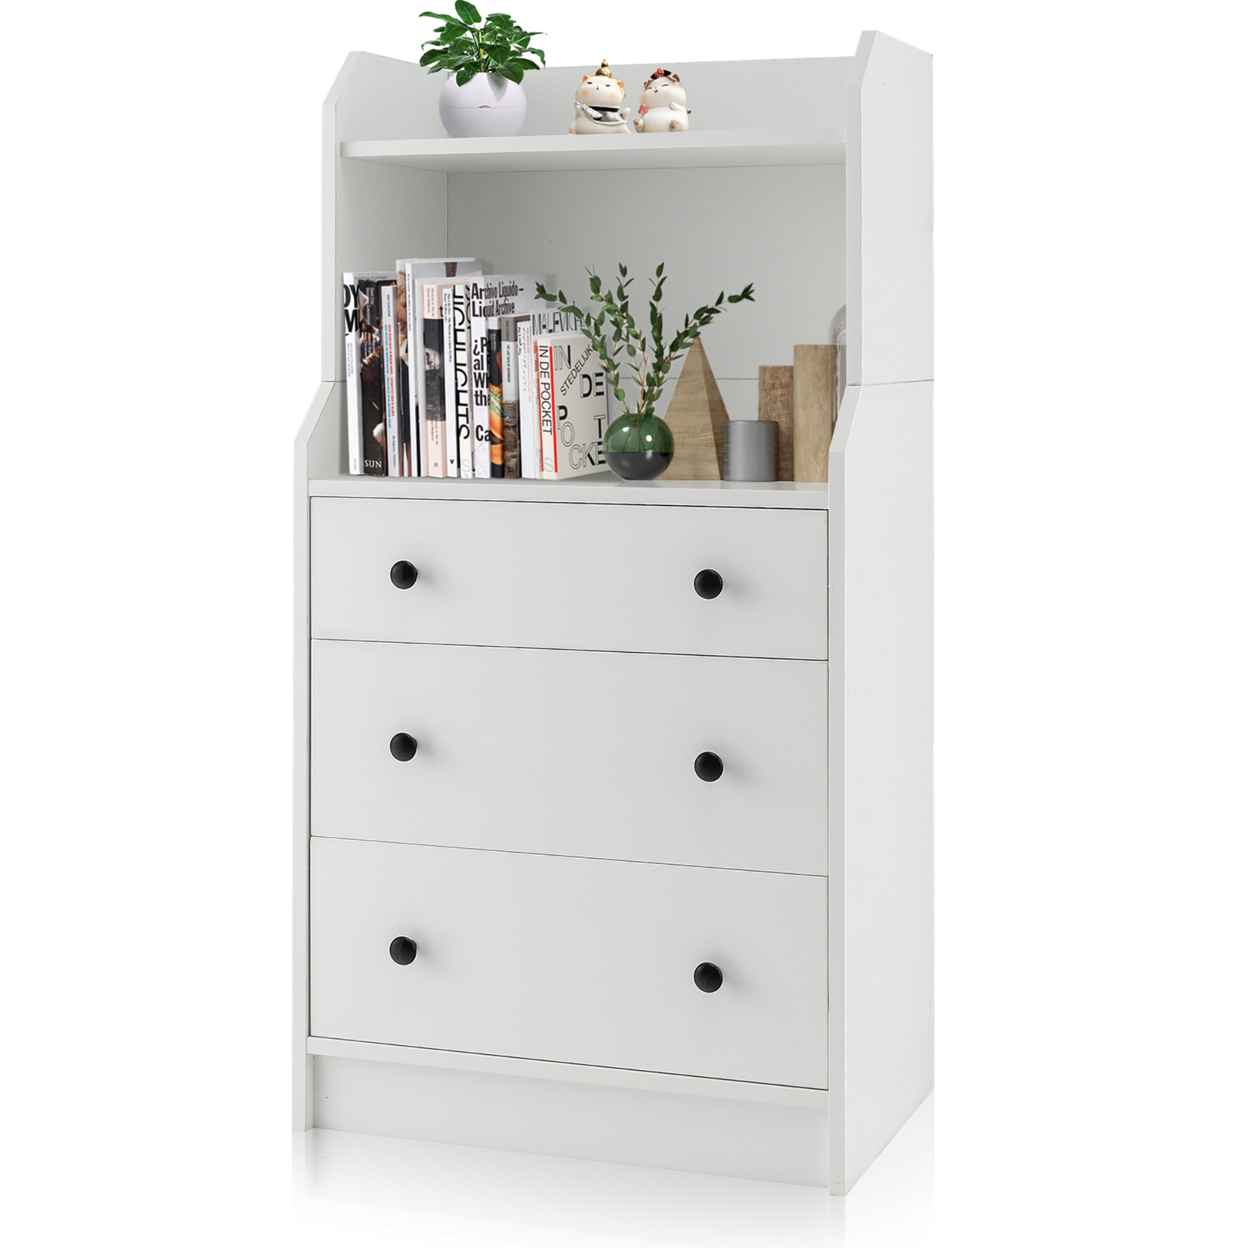 3-Drawer Dresser 44'' Tall Wood Storage Organizer Chest W/ 2 Open Shelves White